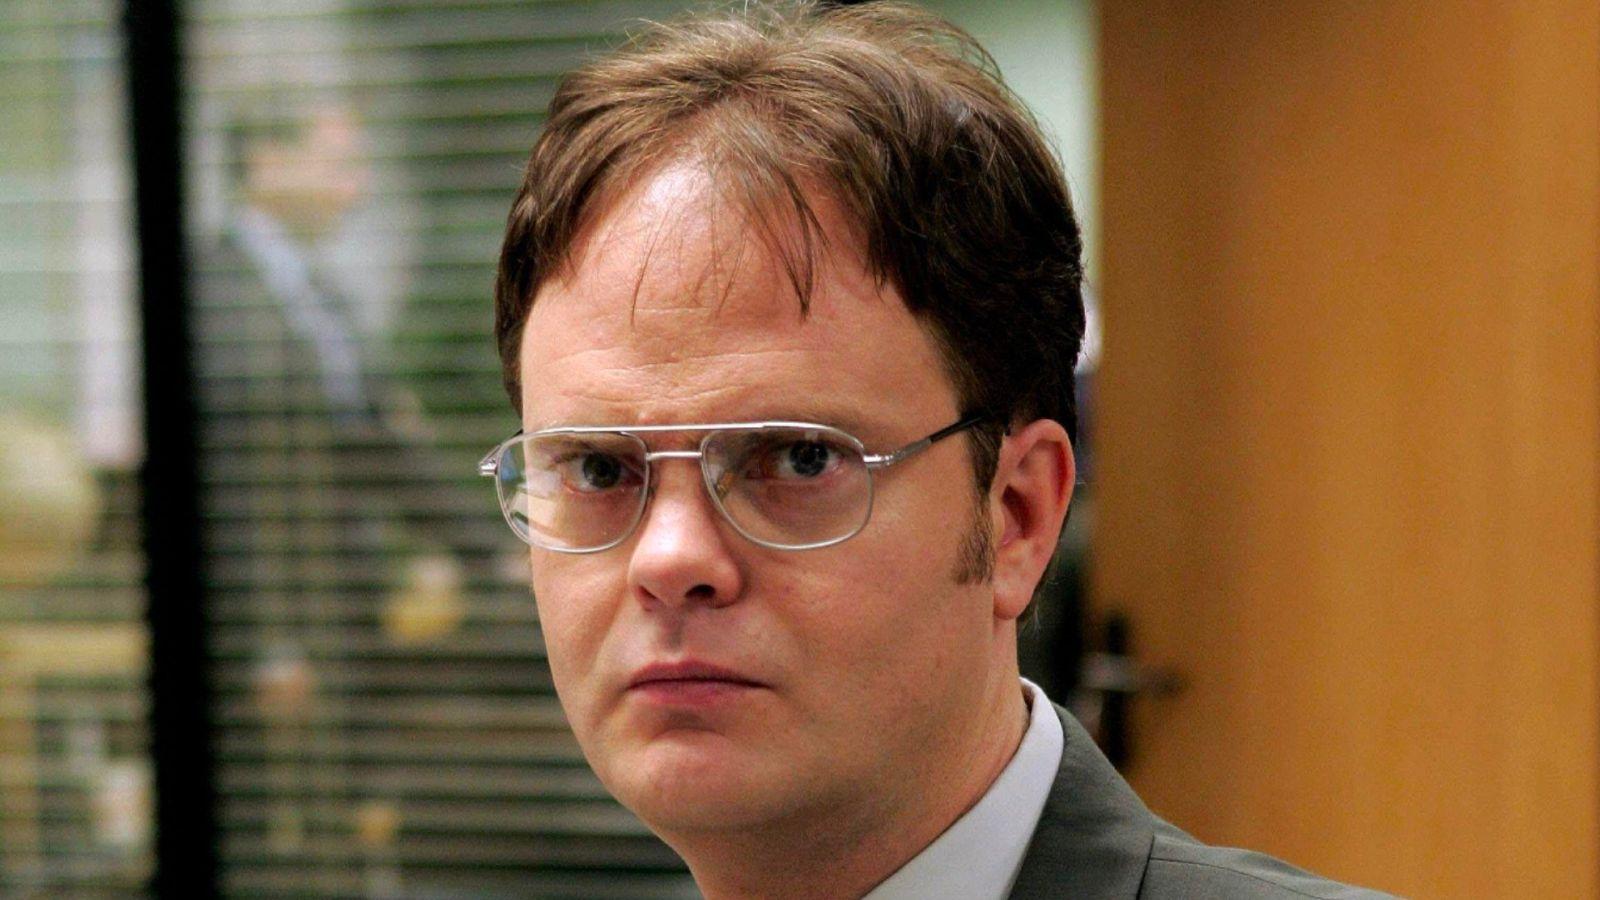 The Office's Rainn Wilson as Dwight Schrute